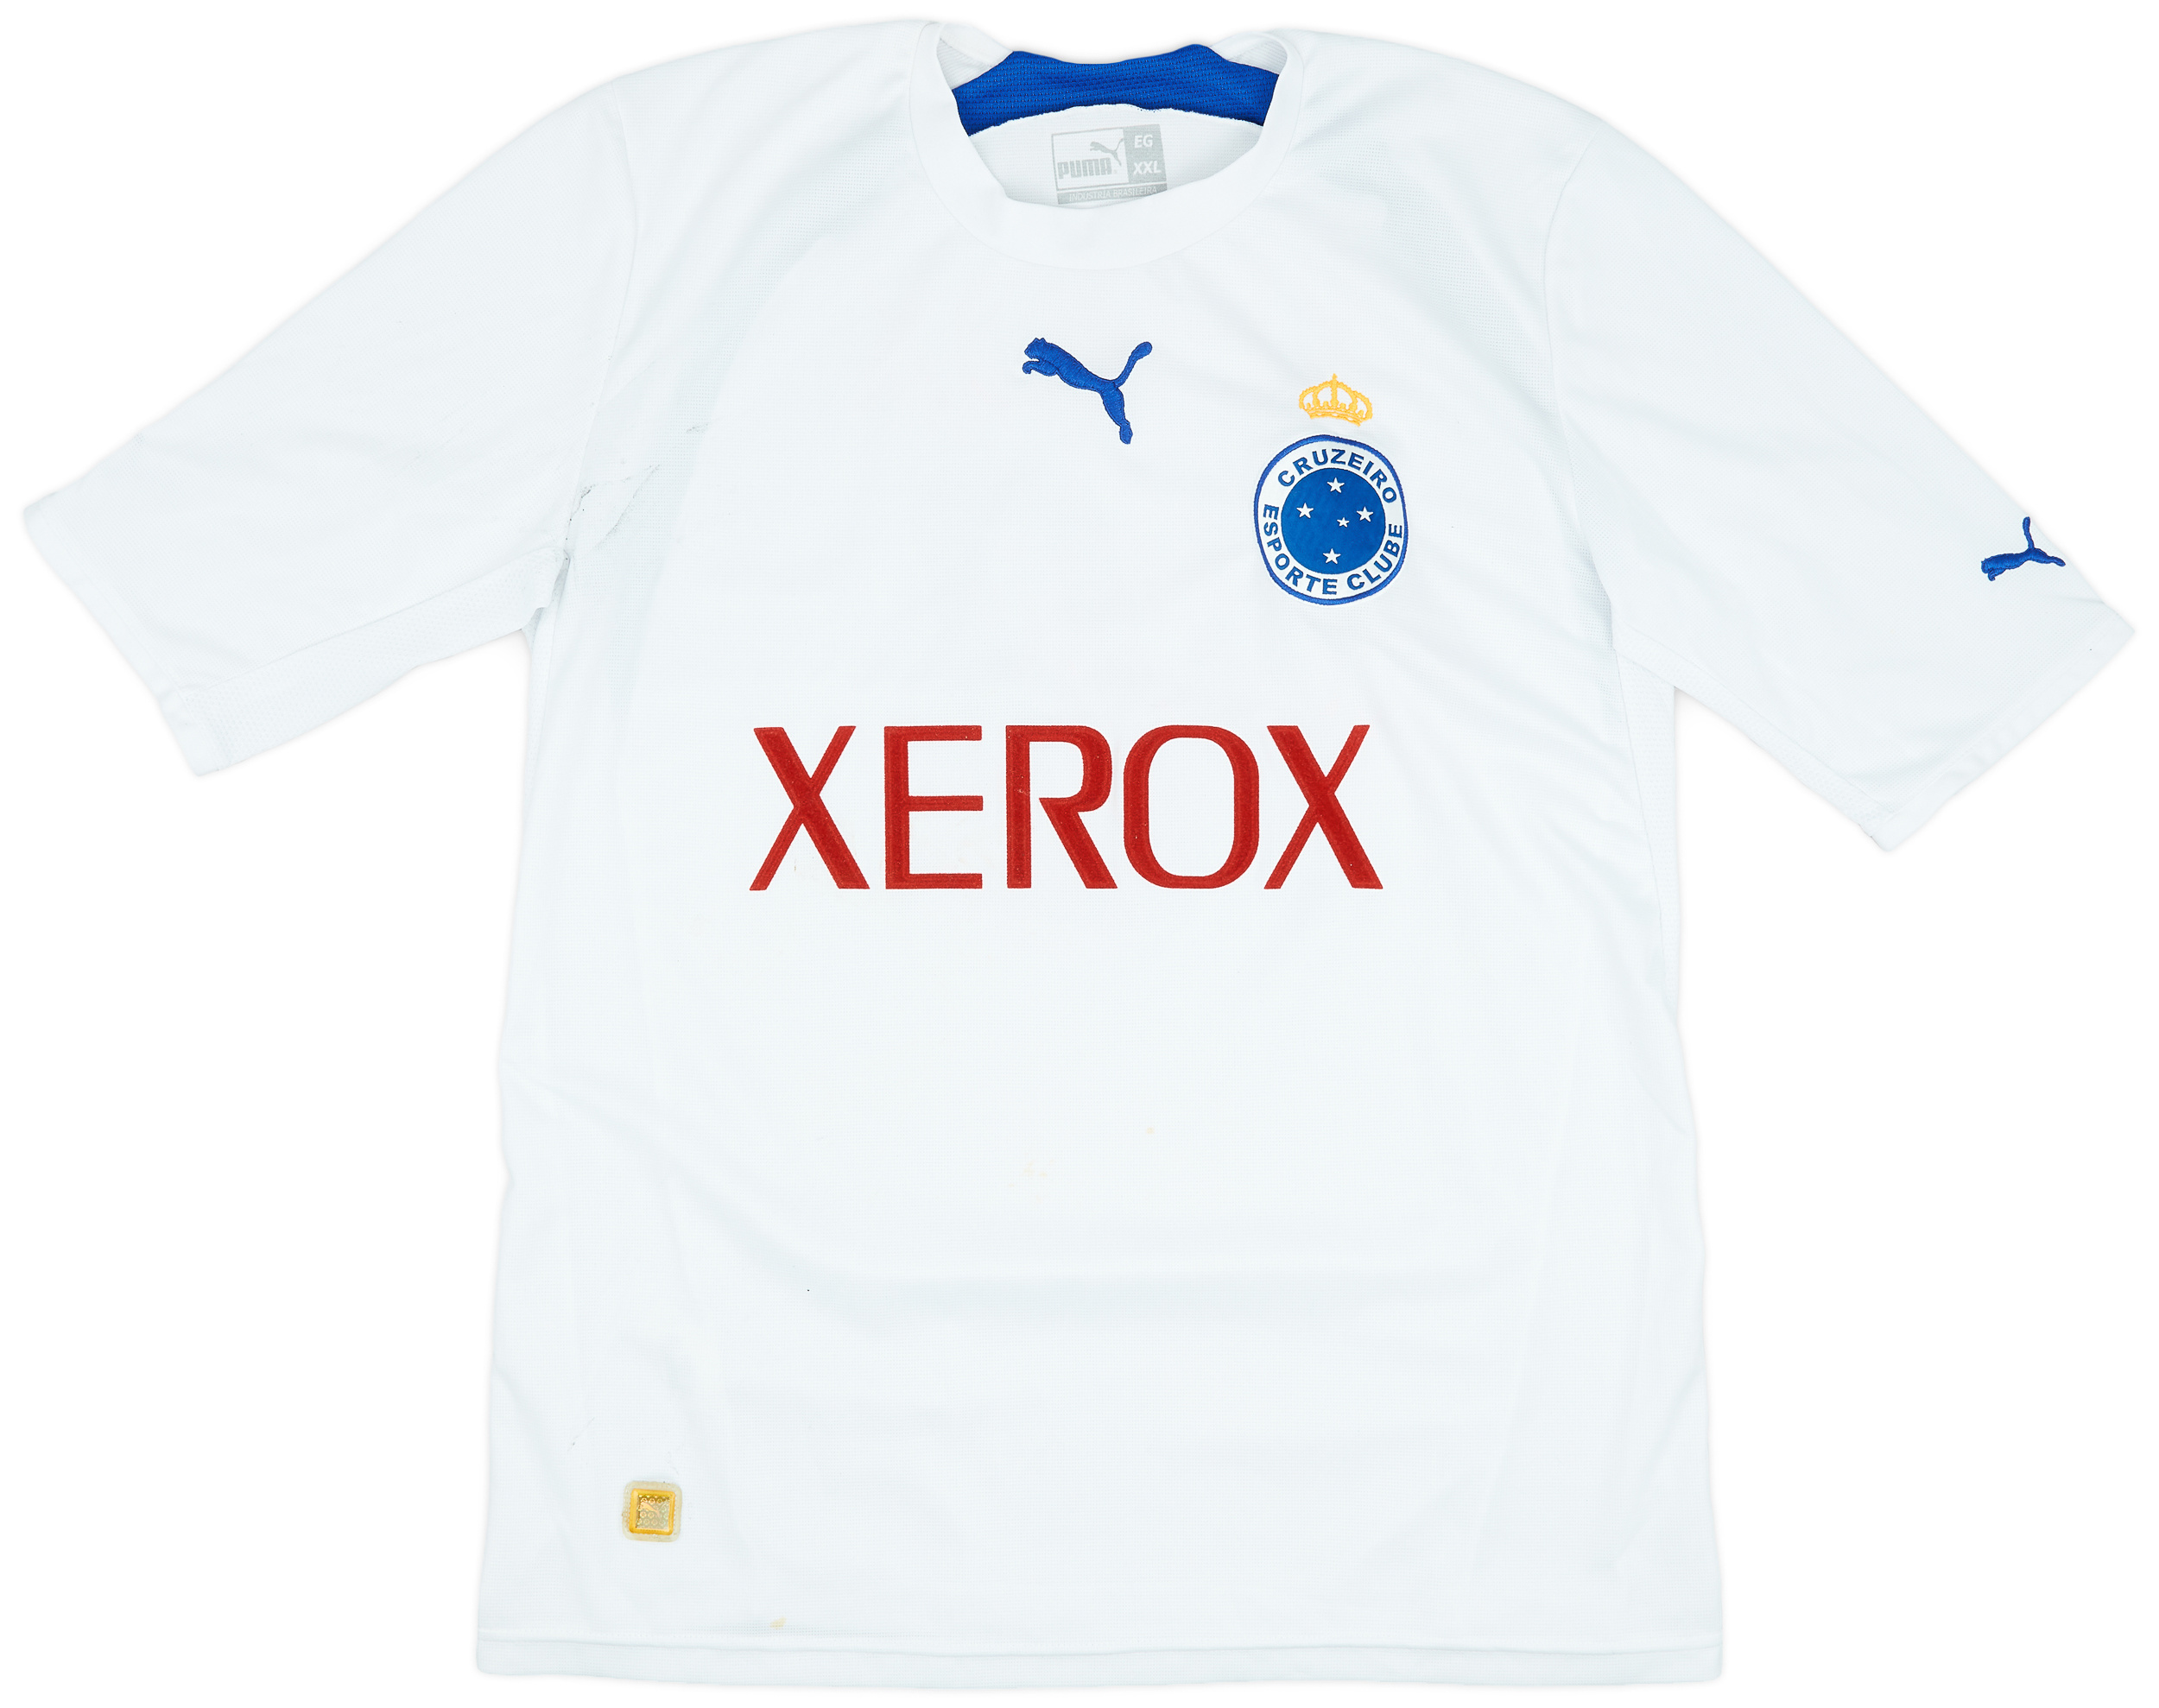 Retro Cruzeiro Shirt